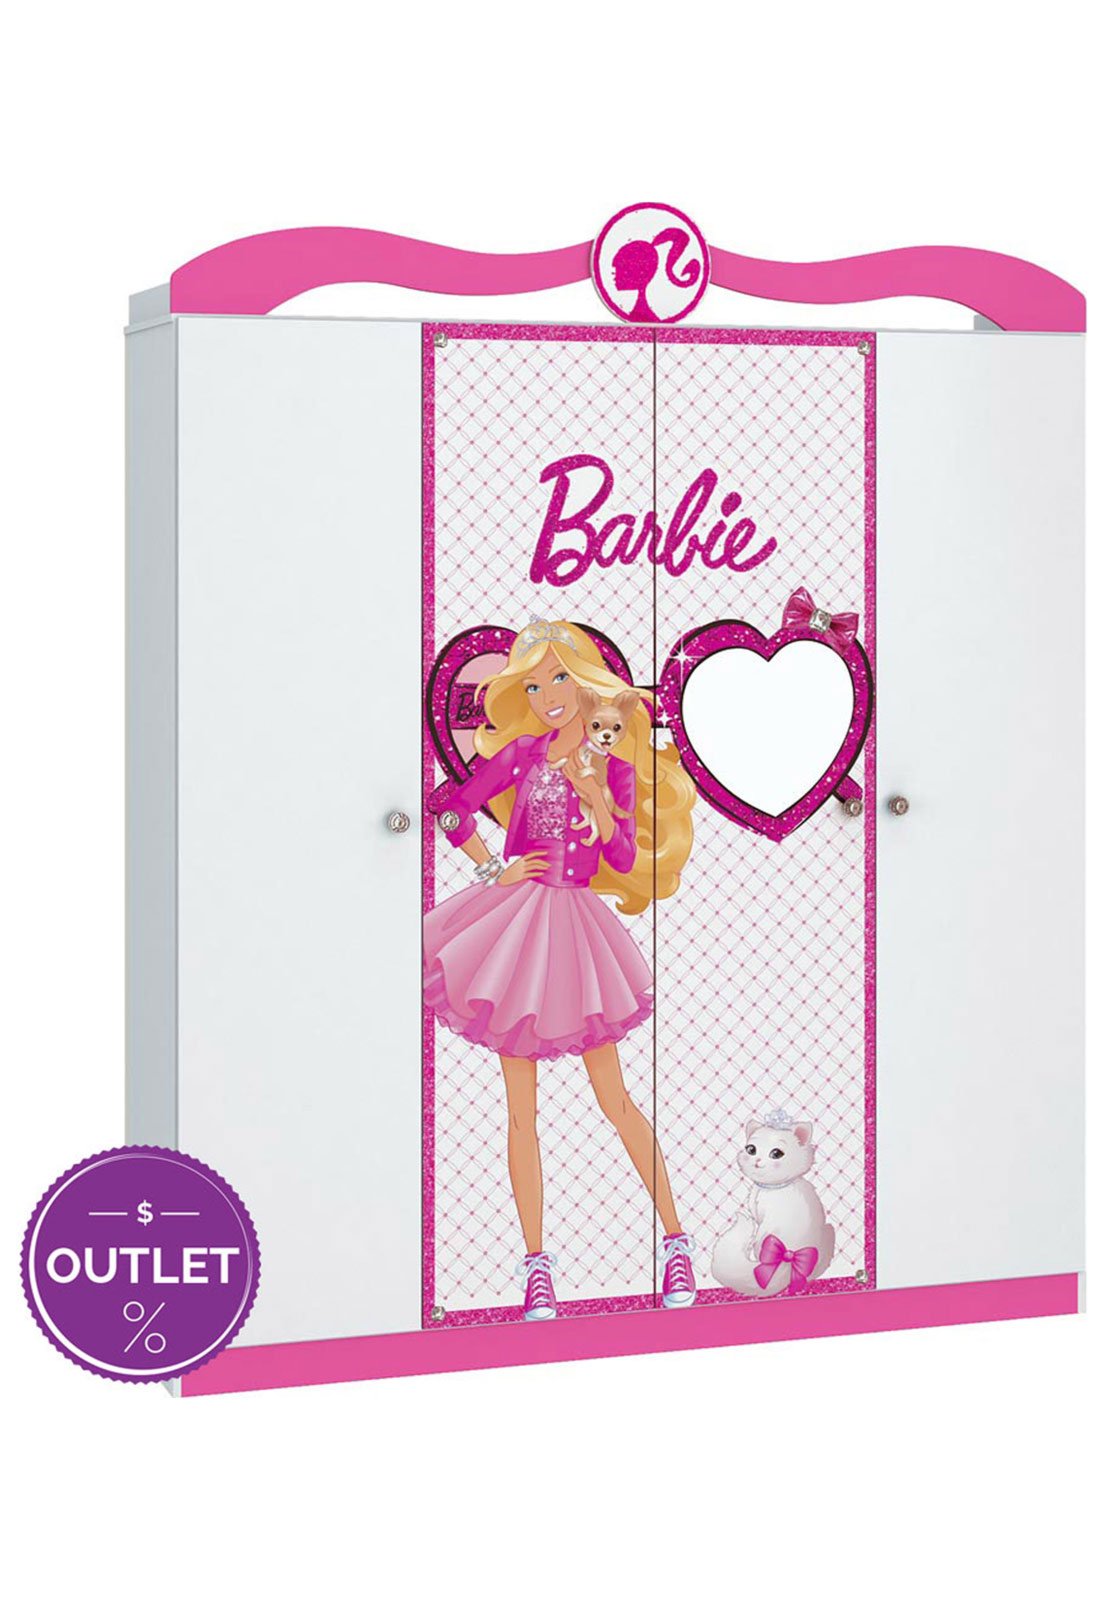 Cama Infantil Barbie Happy Pura Magia Branco/Rosa Pink em Promoção